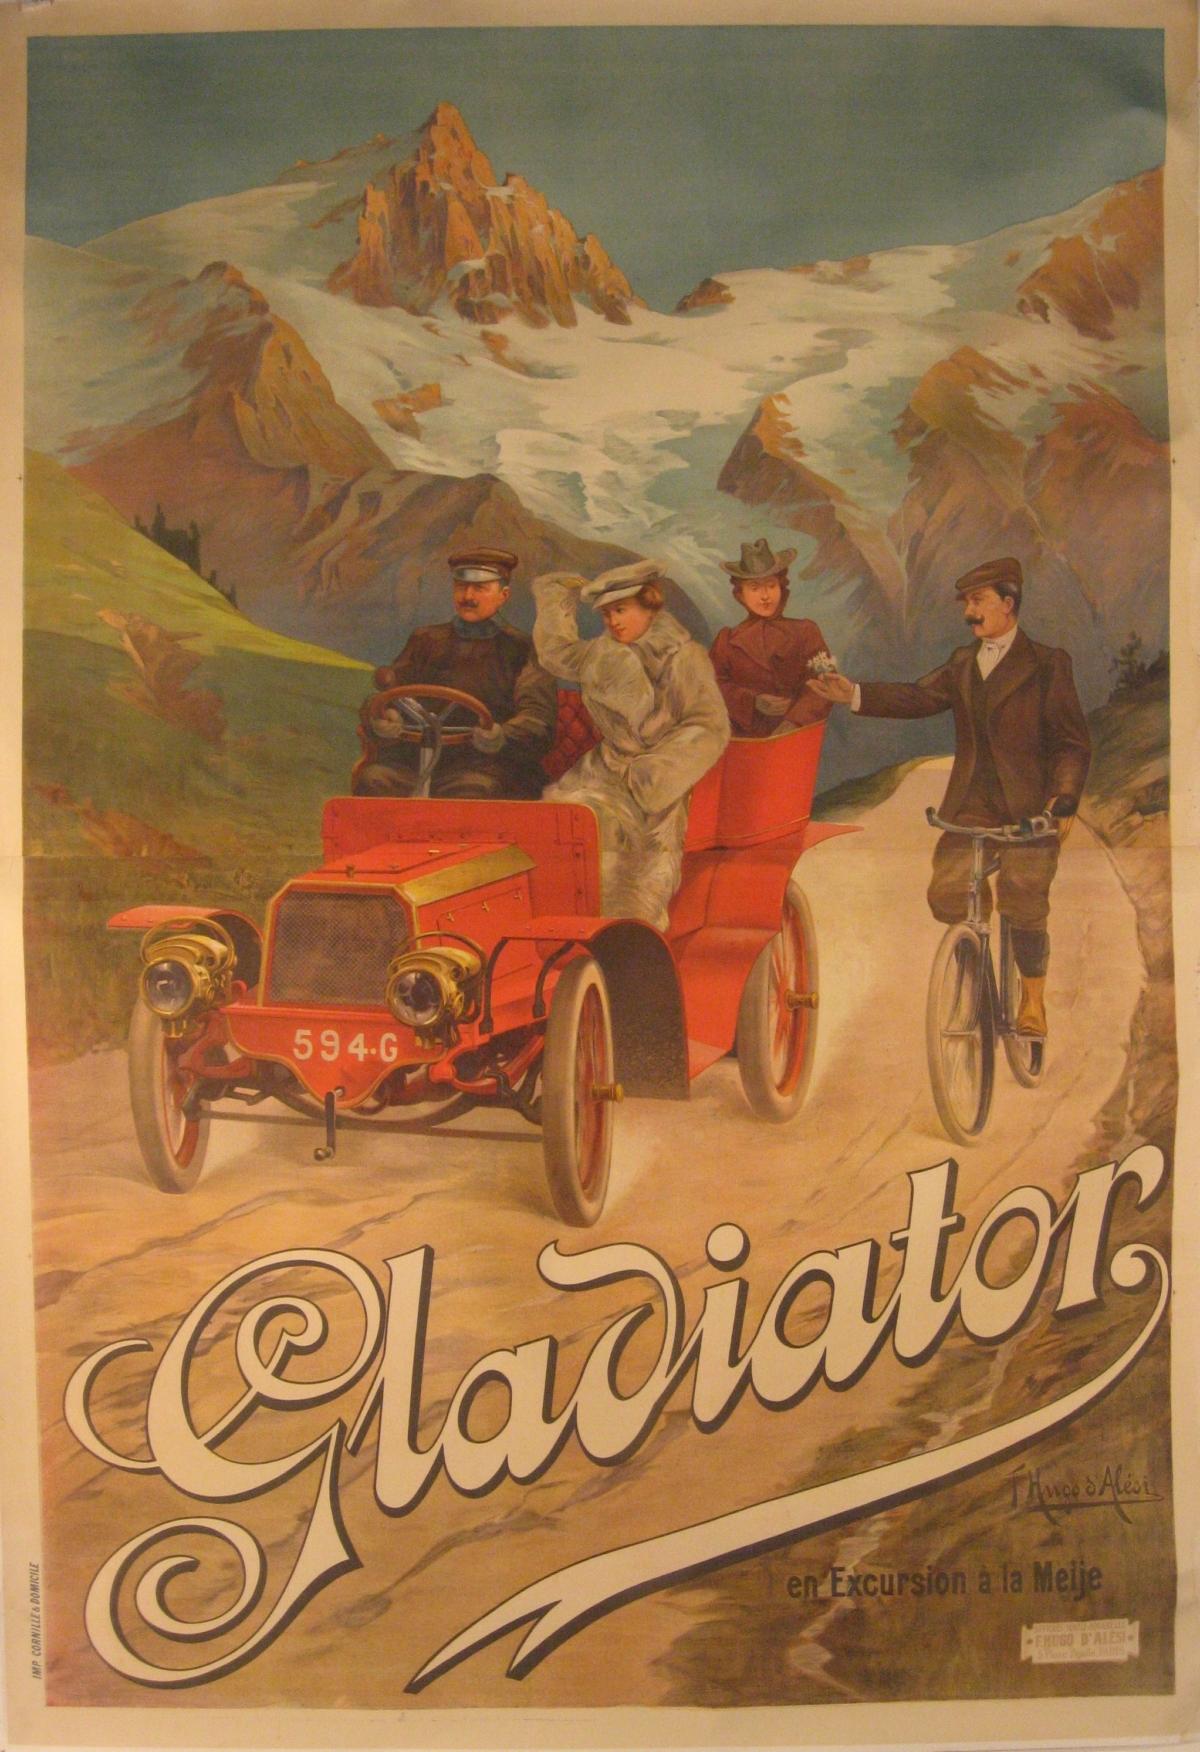 Künstler: Hugo D'Alesi  (Französisch, 1849 - 1906)

Ursprungsdatum: 1903

Medium: Original Steinlithographie Vintage Poster

Größe: 64